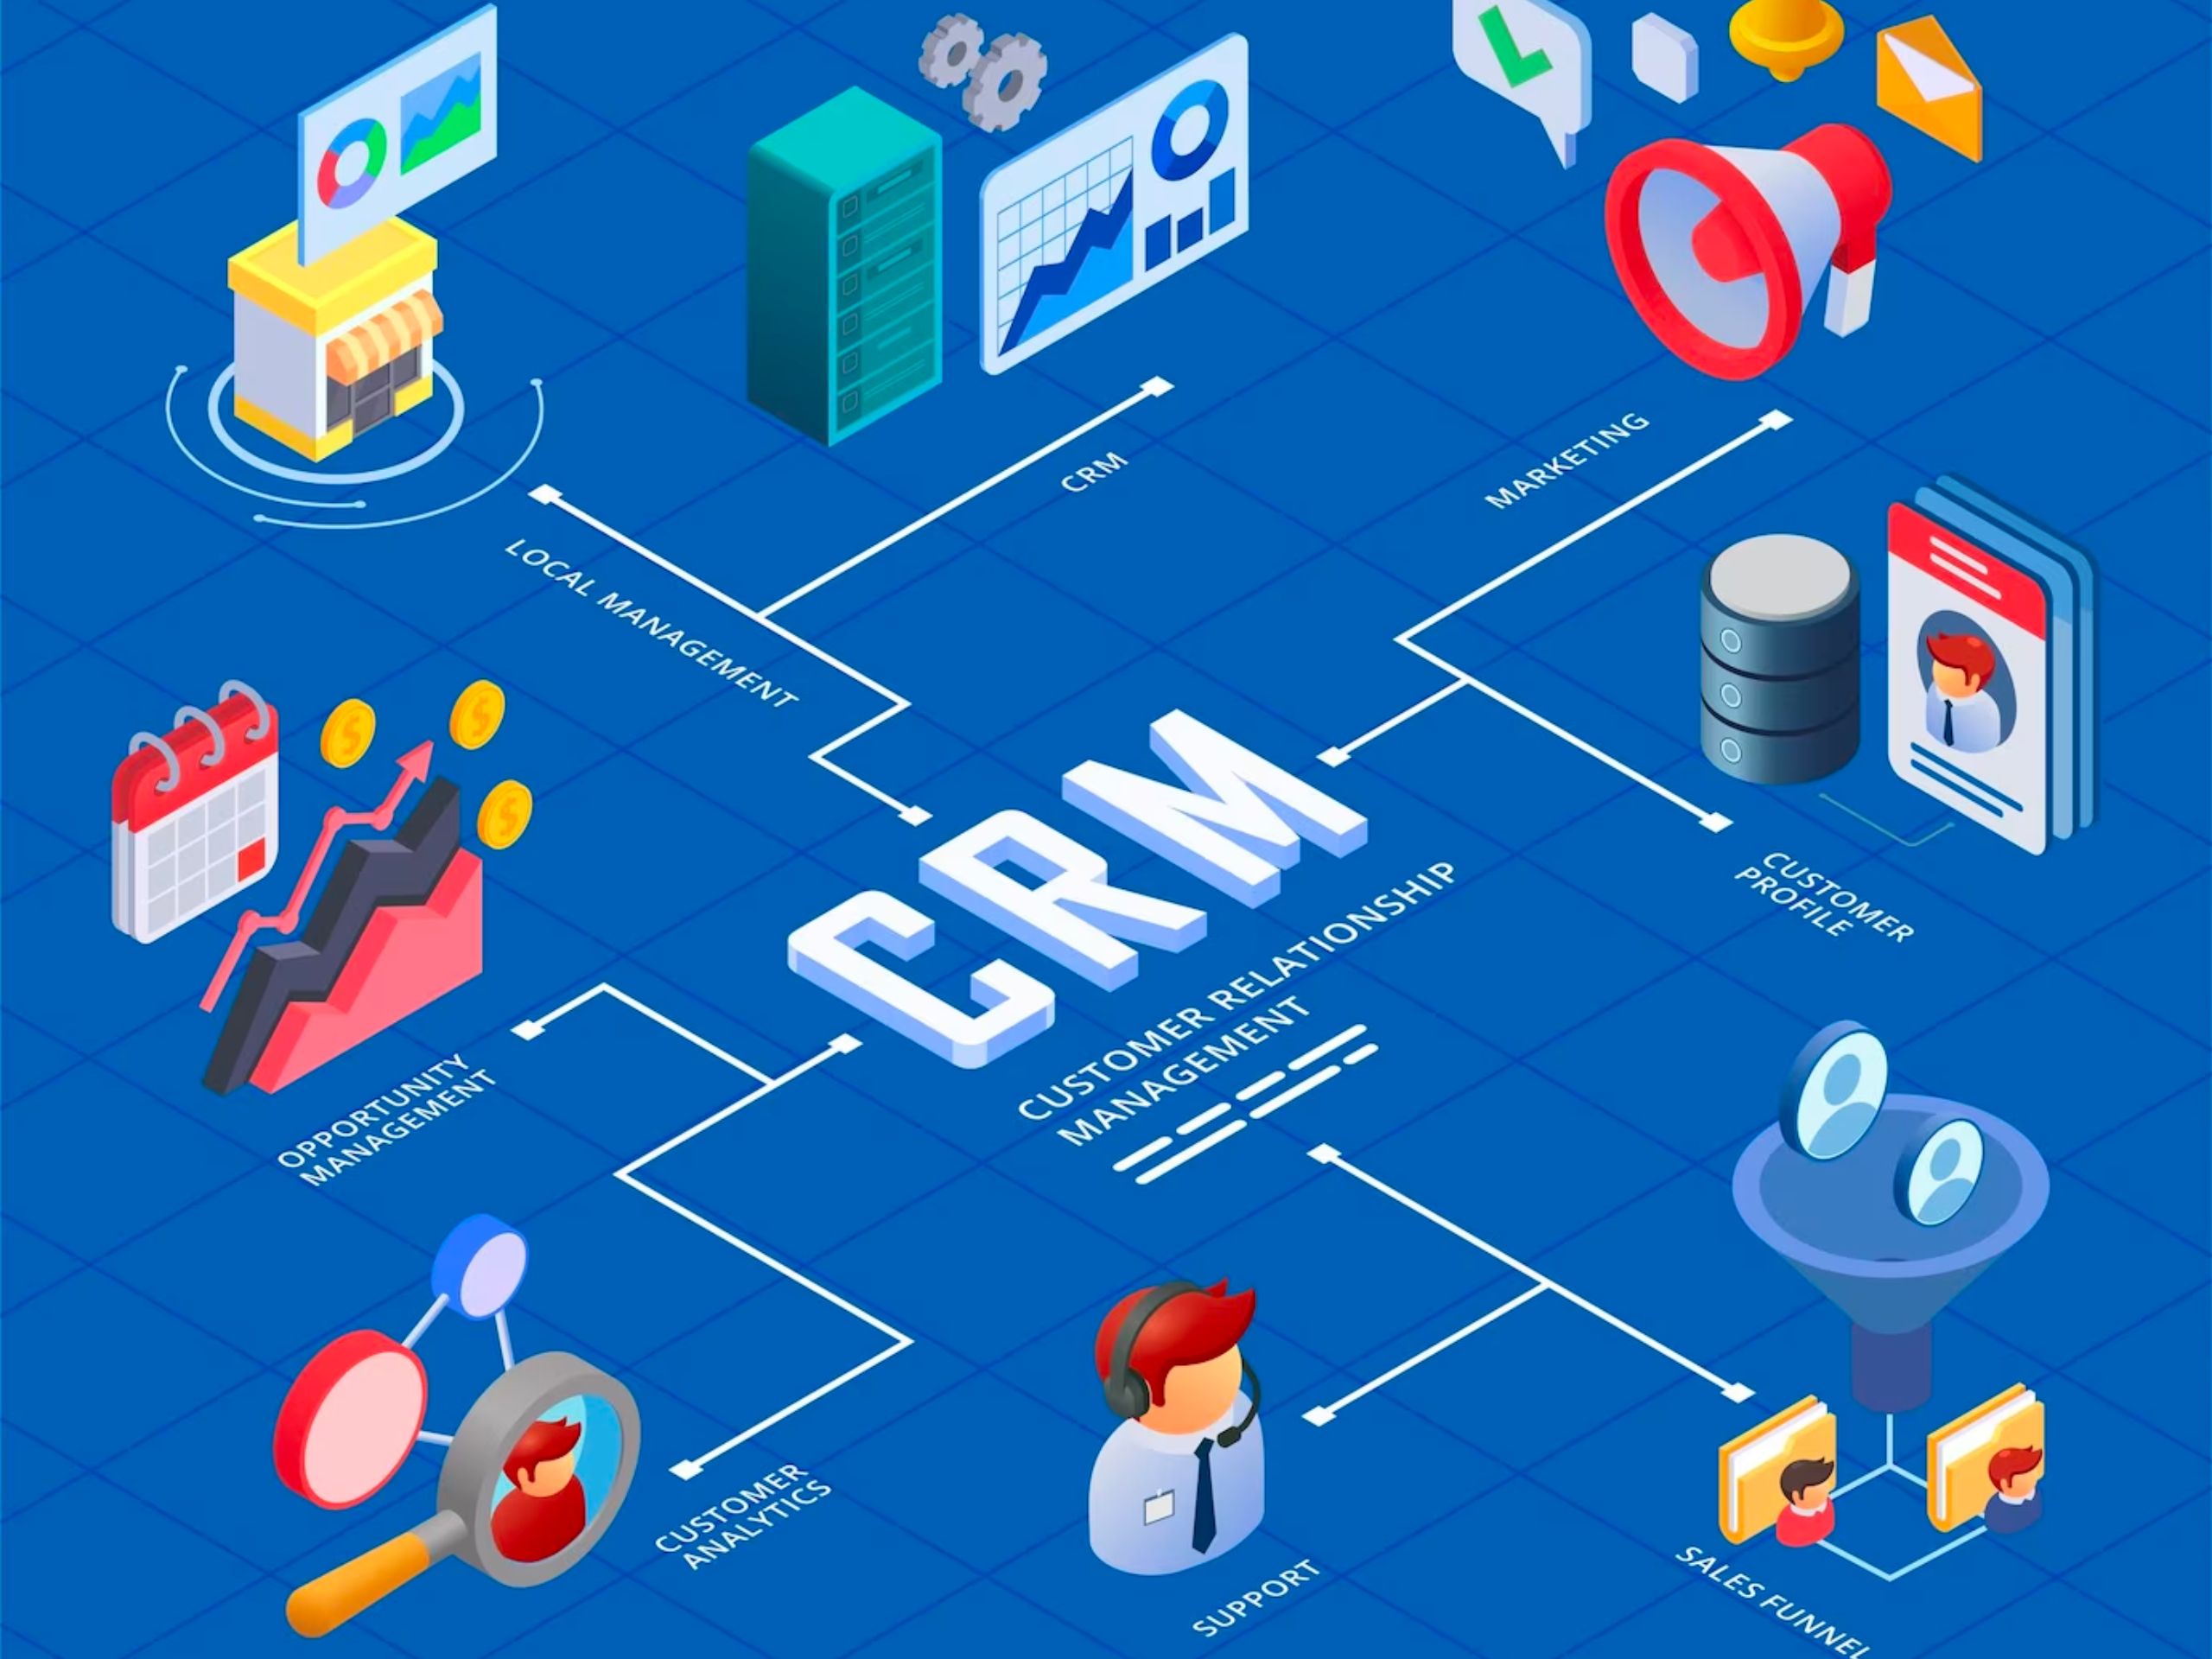 CRM là gì? Hướng dẫn cho người mới bắt đầu về quản lý quan hệ khách hàng